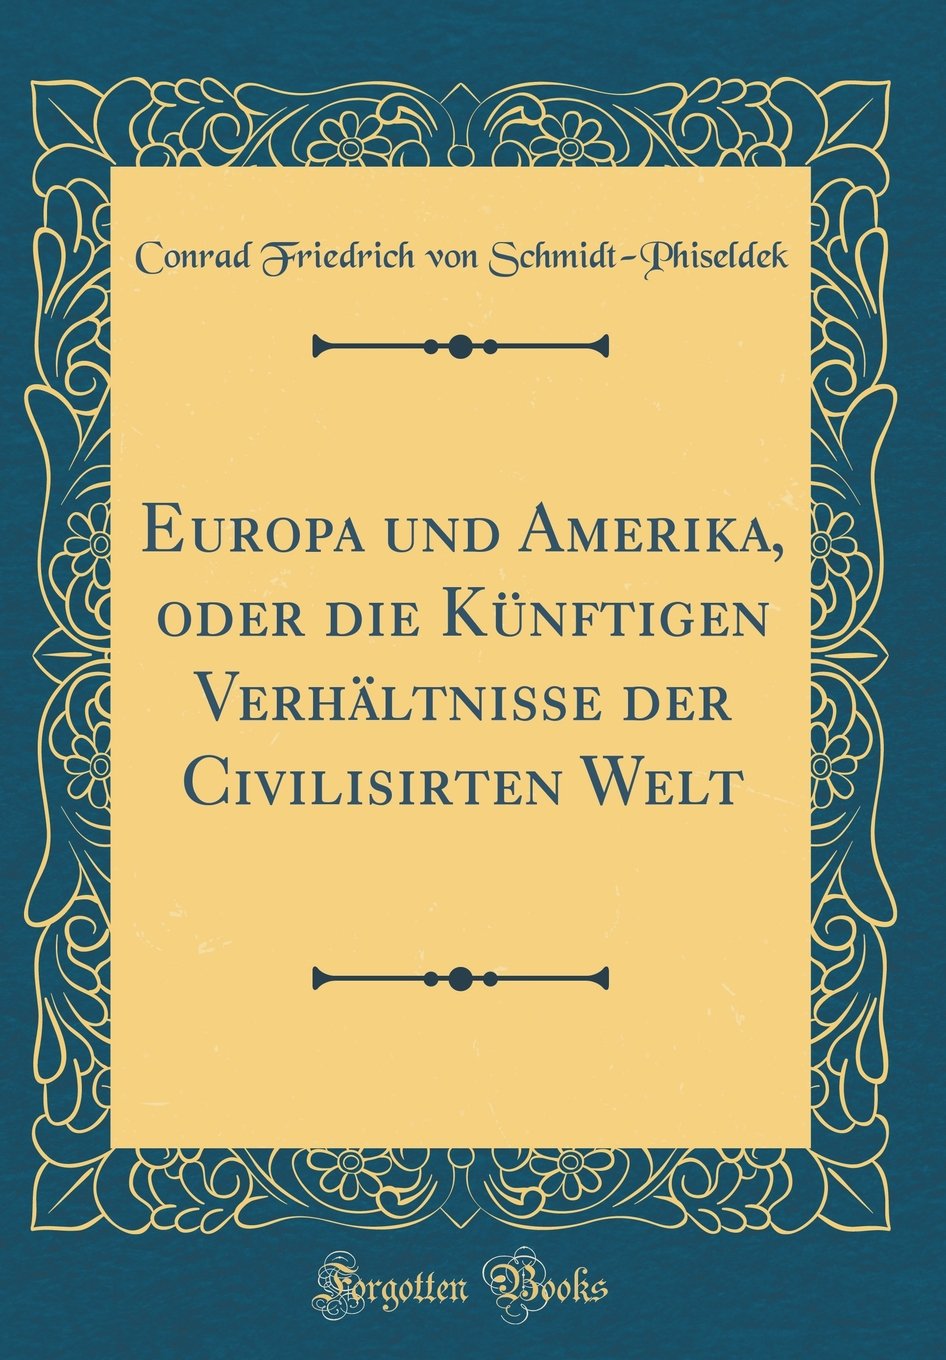 Conrad Friedrich von Schmidt-Phiseldek, “Europa und Amerika, oder die Künftigen Verhältnisse der Civilisirten Welt”, 1820.